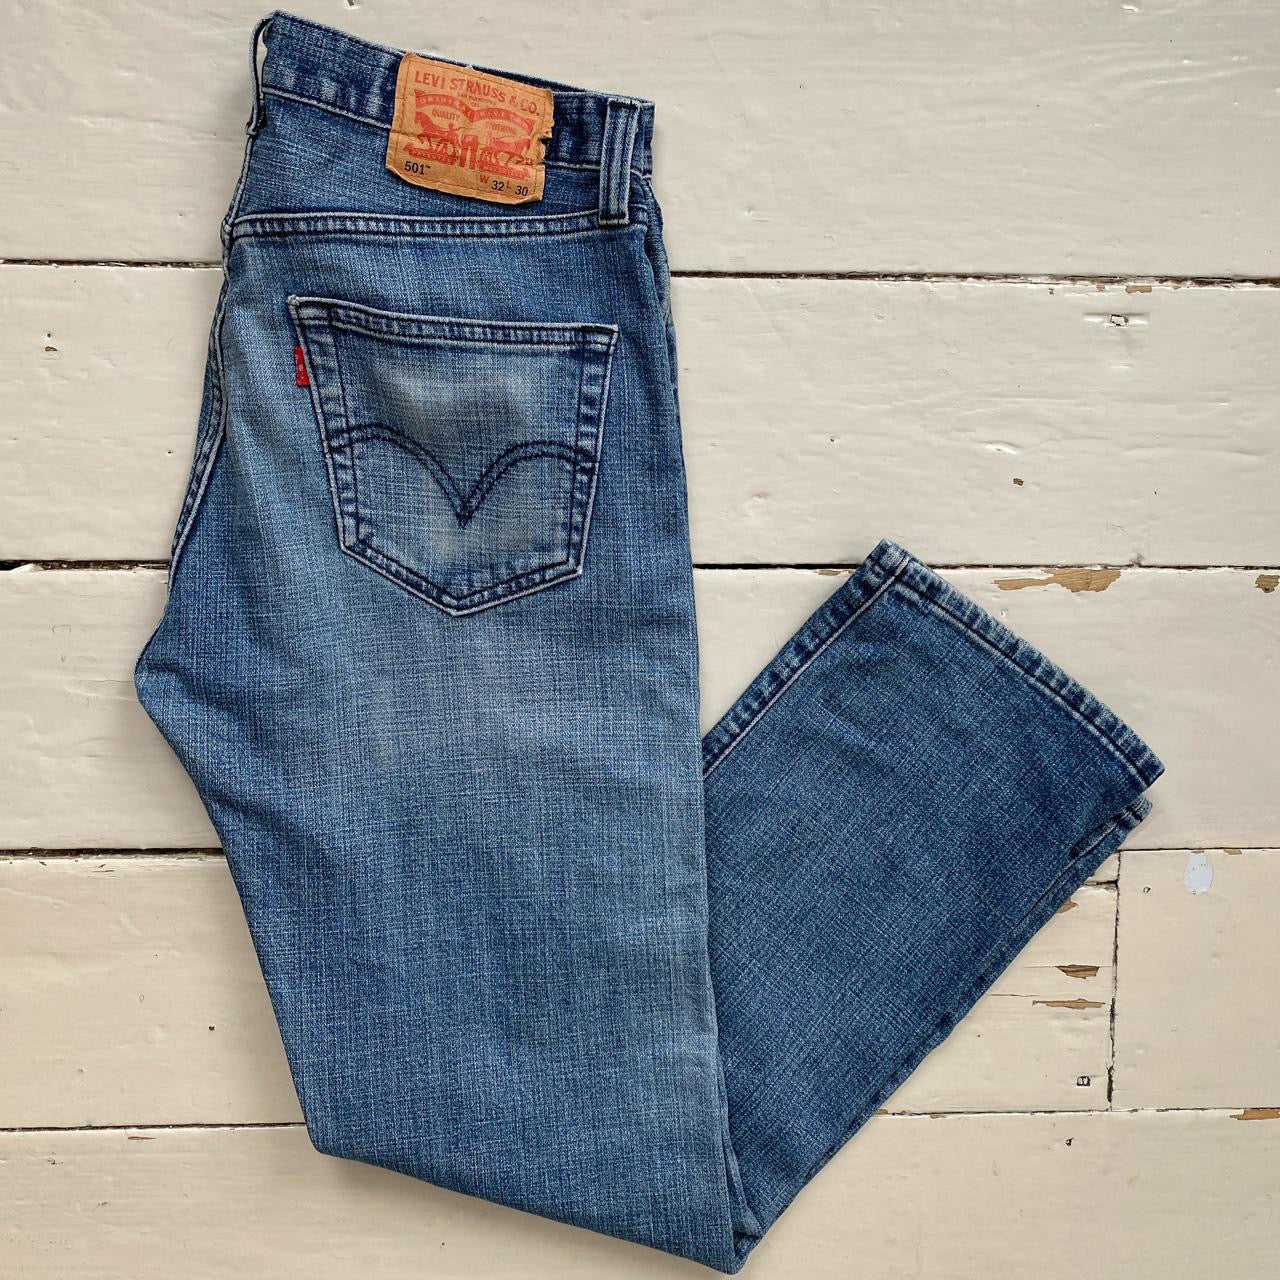 Levis 501 Blue Jeans (32/30)